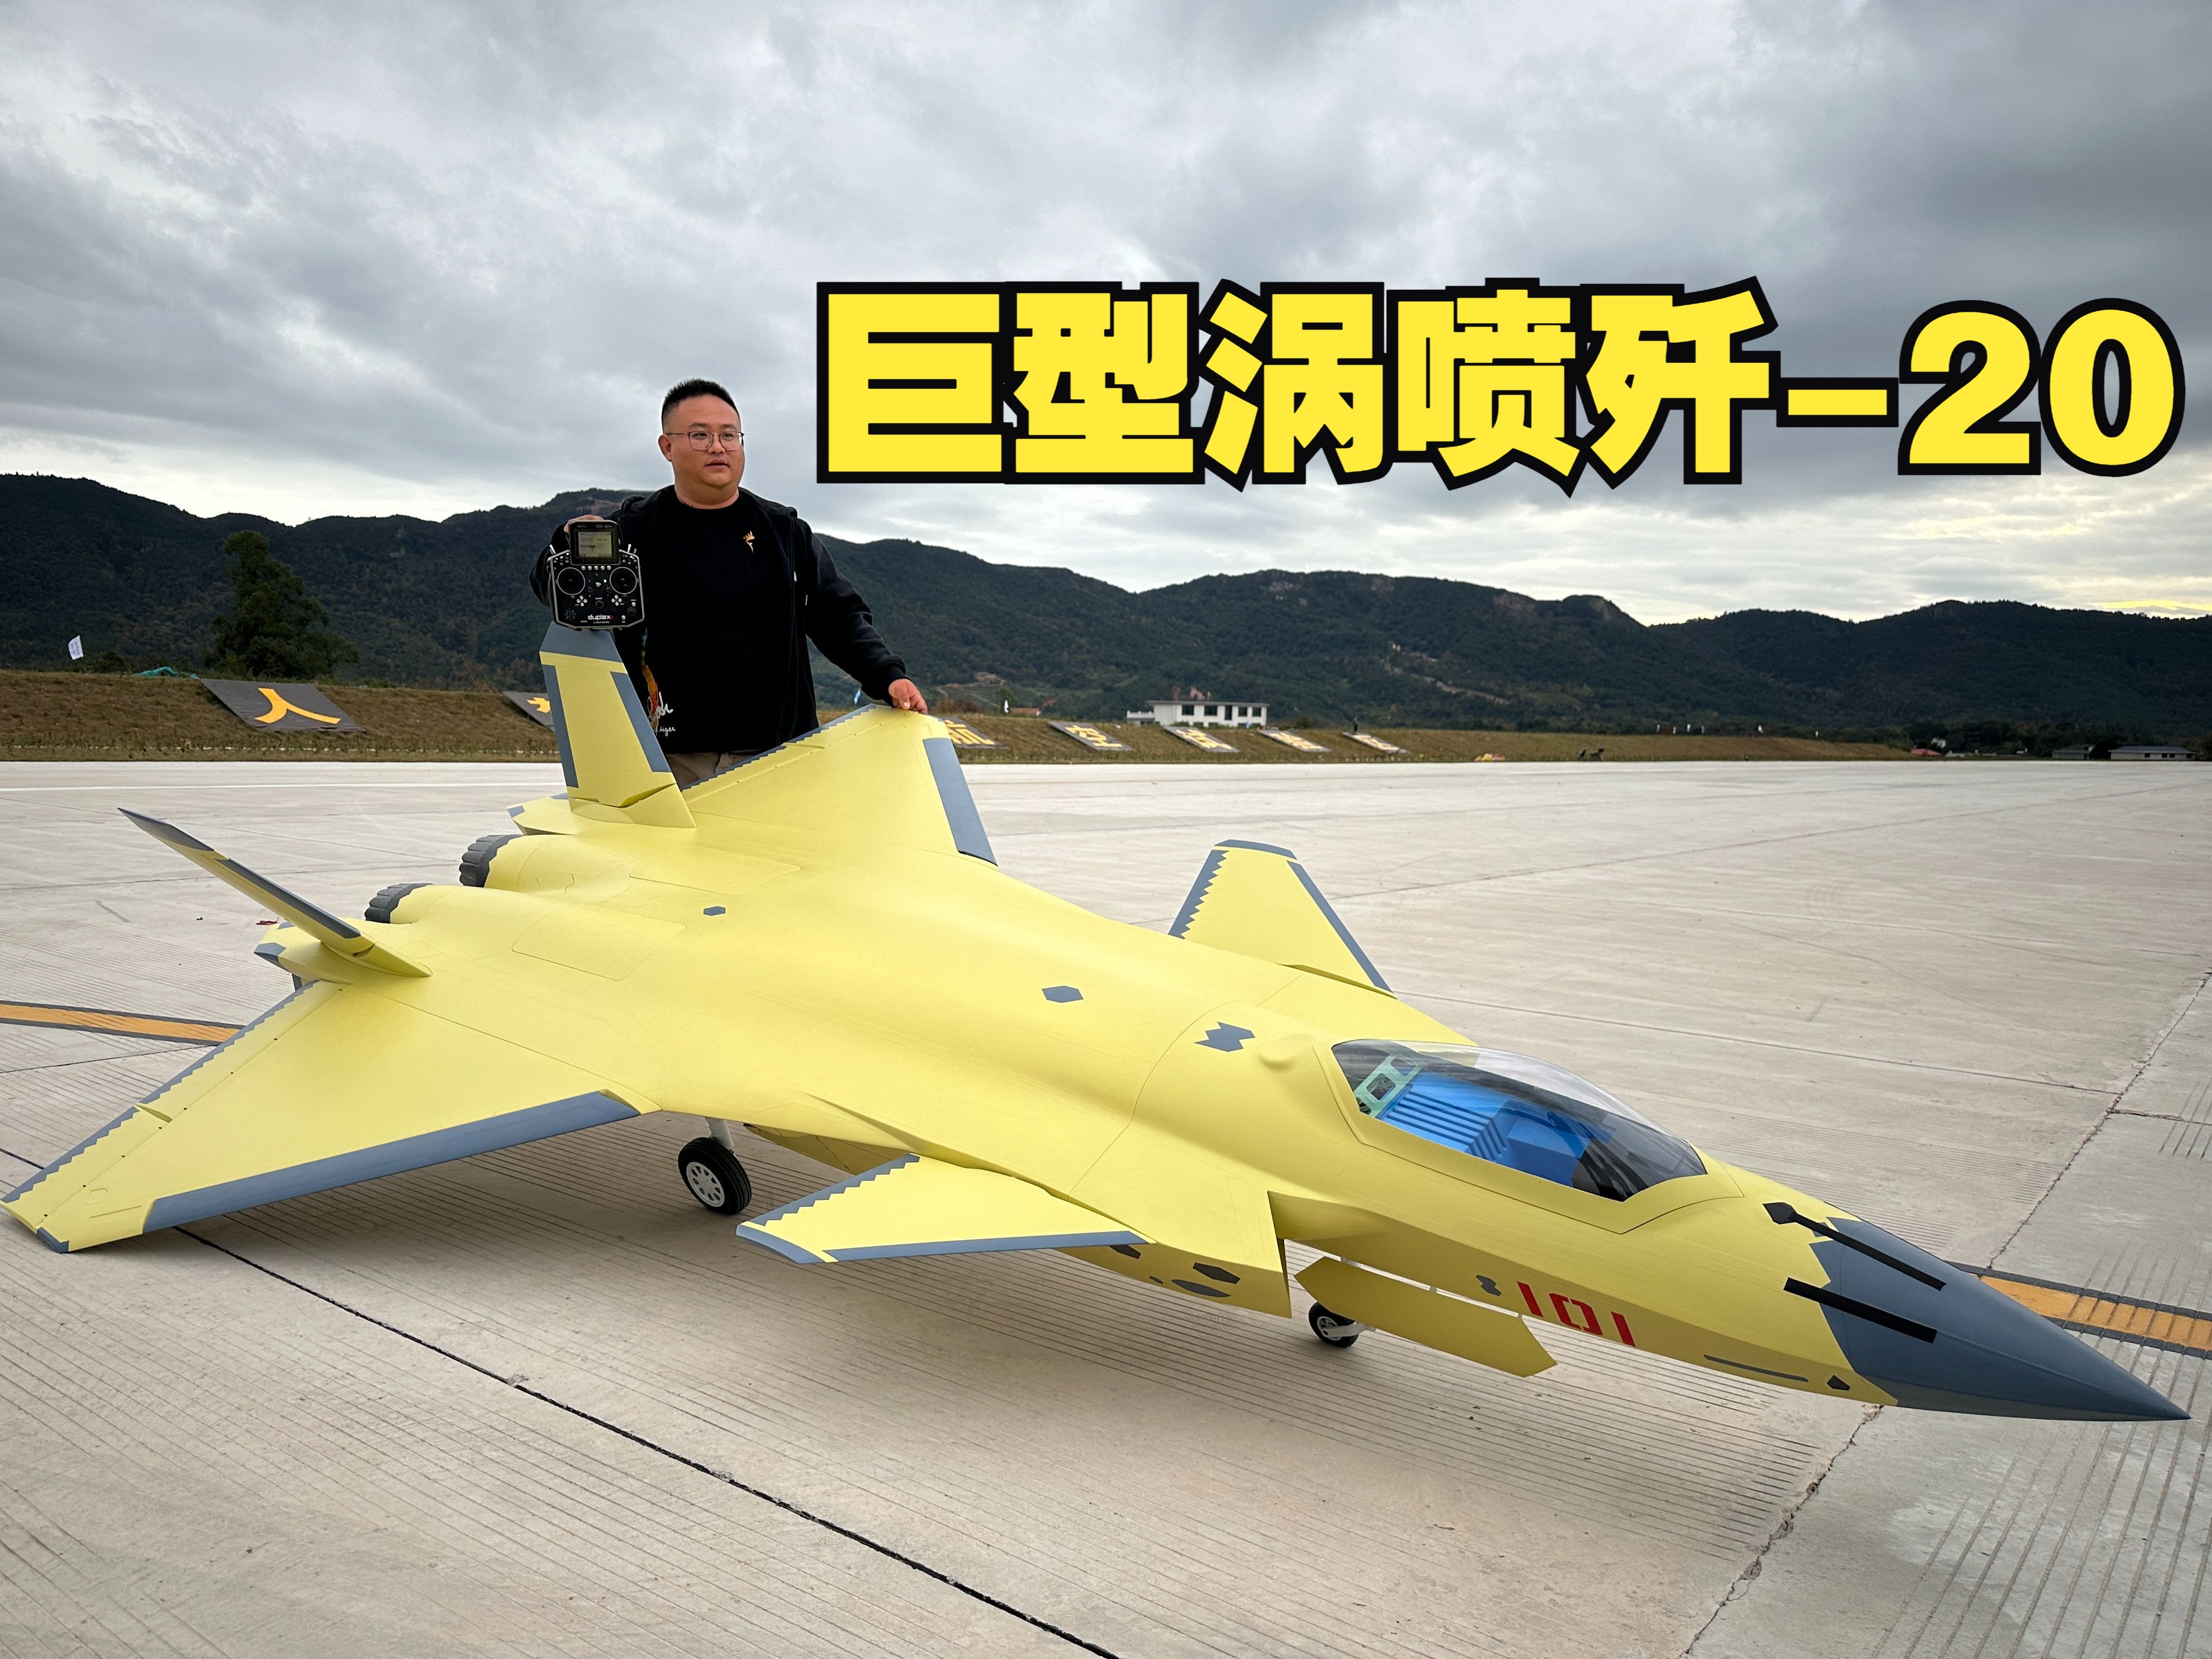 国内首台大型像真歼-20涡喷航模在赣州机场成功首飞